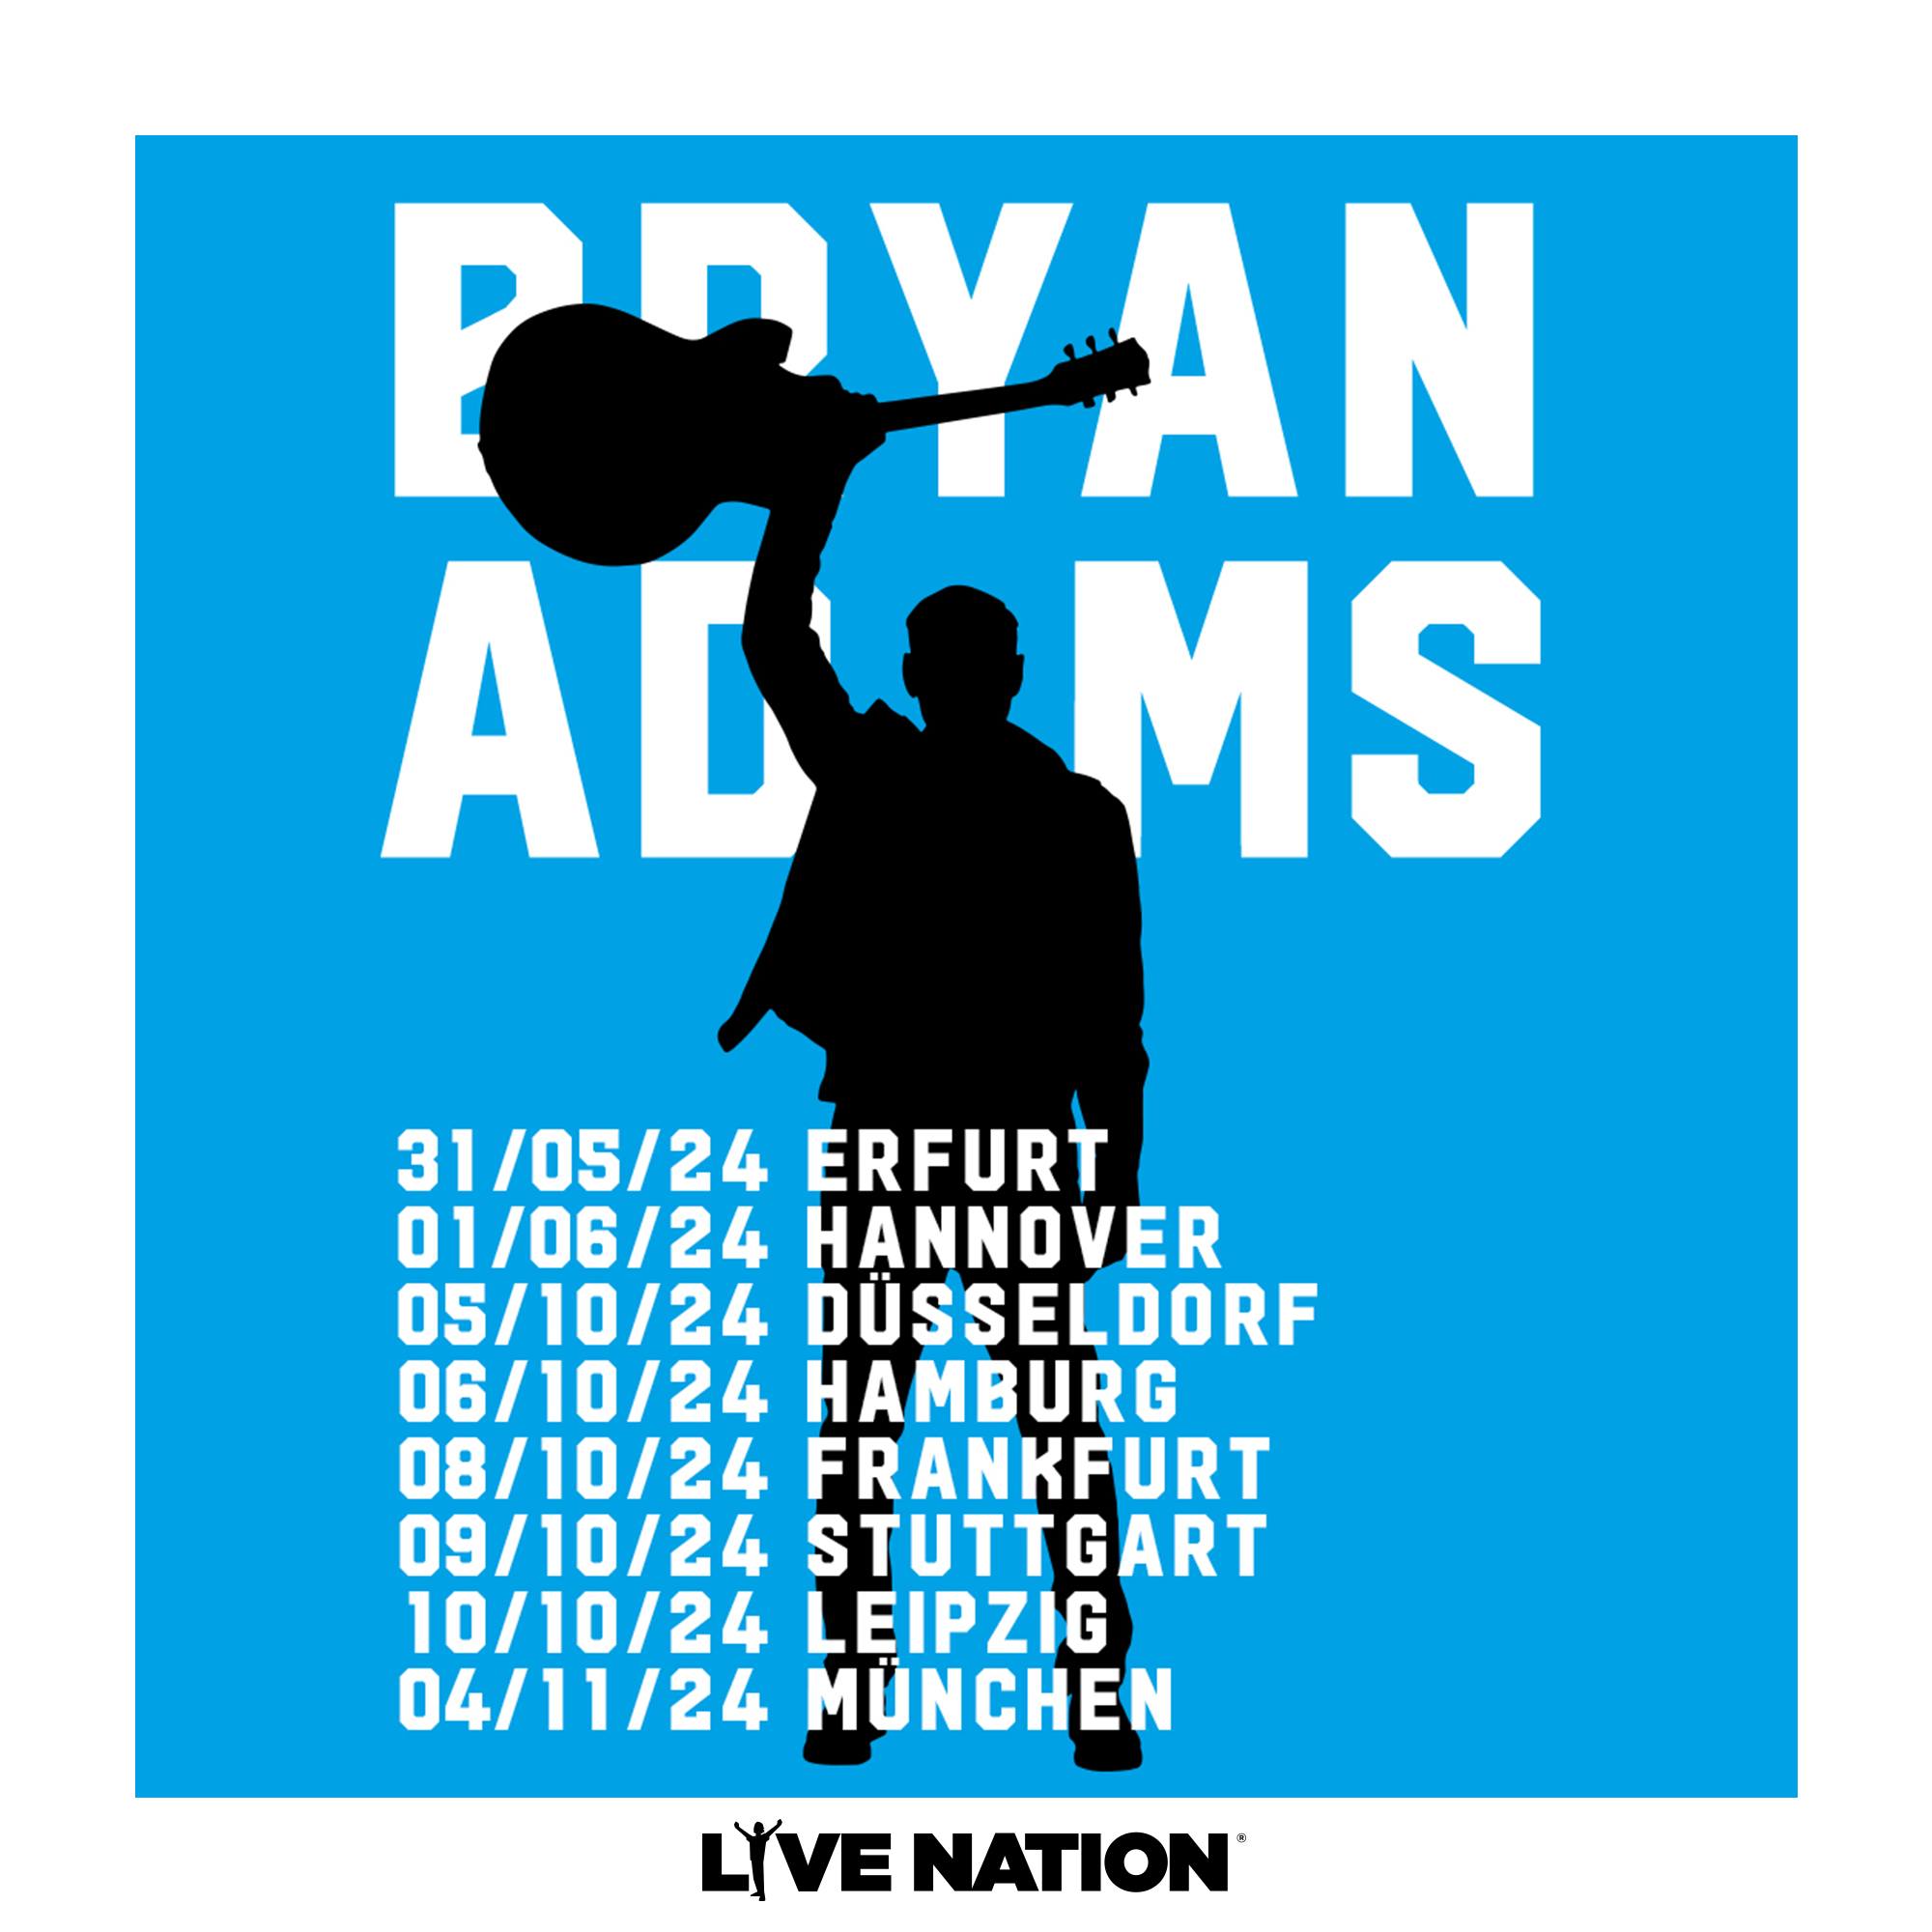 Bryan Adams in der Barclays Arena Tickets